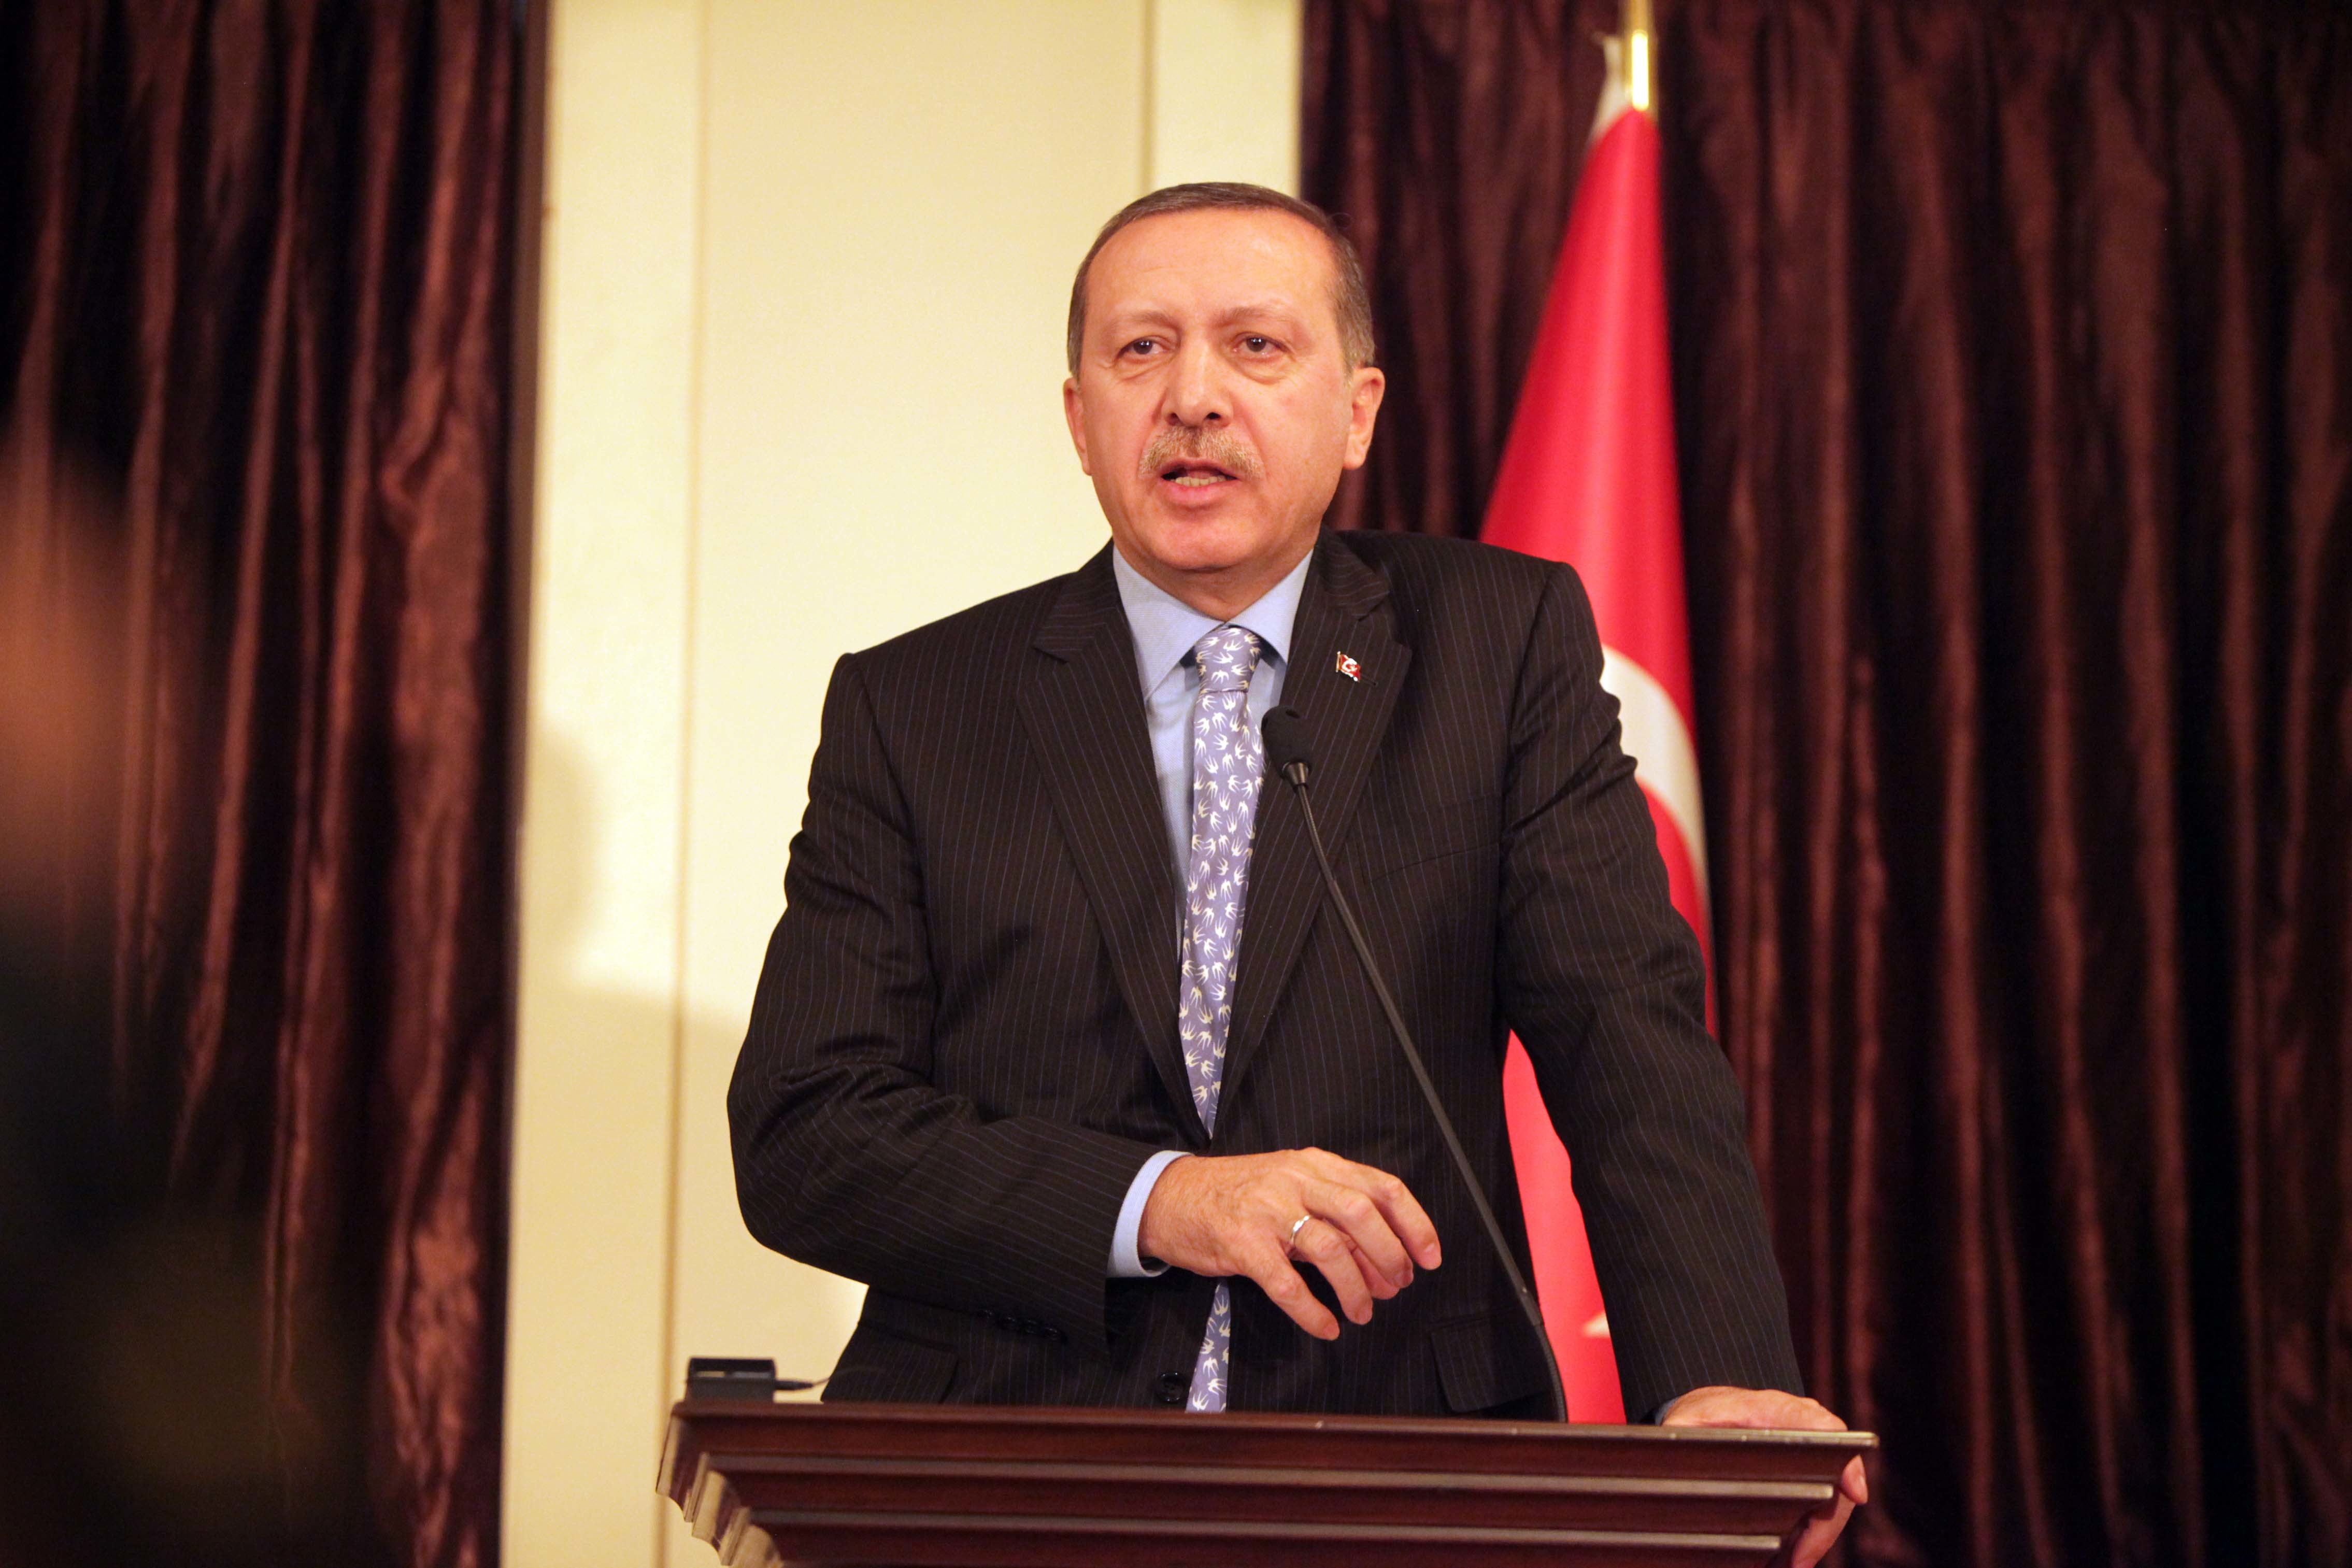 Ραγδαίες εξελίξεις στην Τουρκία! Υπουργός που παραιτήθηκε “καίει” τον Ερντογάν: “Αυτός έδινε οδηγίες για το σκάνδαλο”